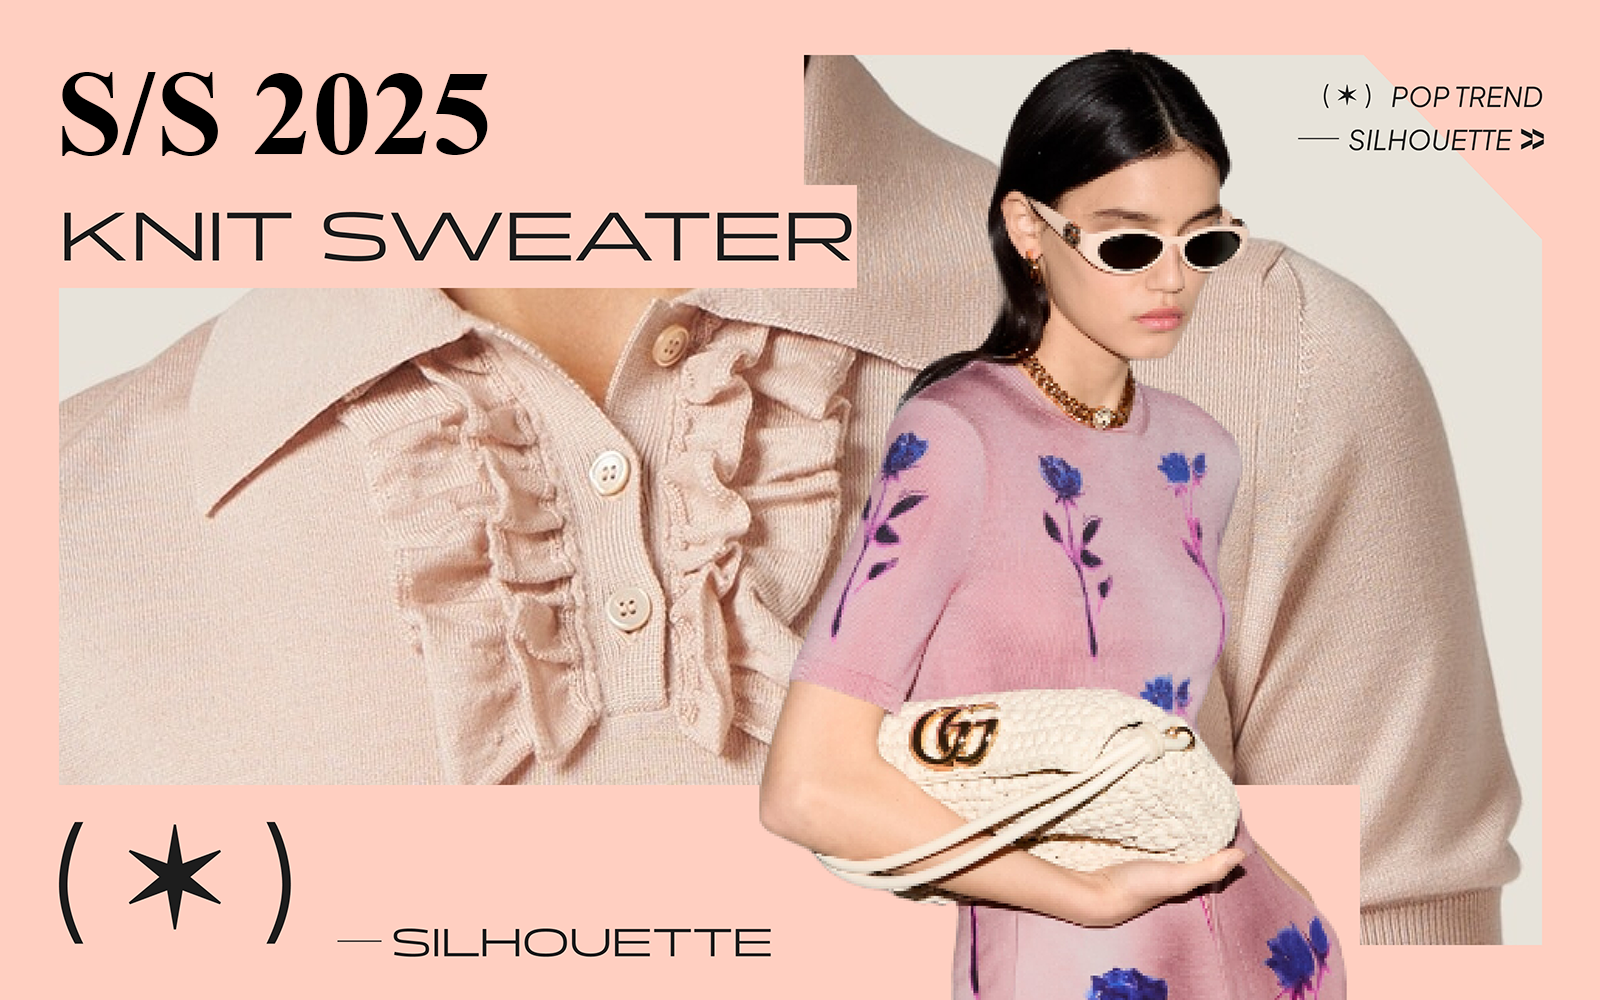 S/S 2025 Silhouette Trend for Women's Knitwear